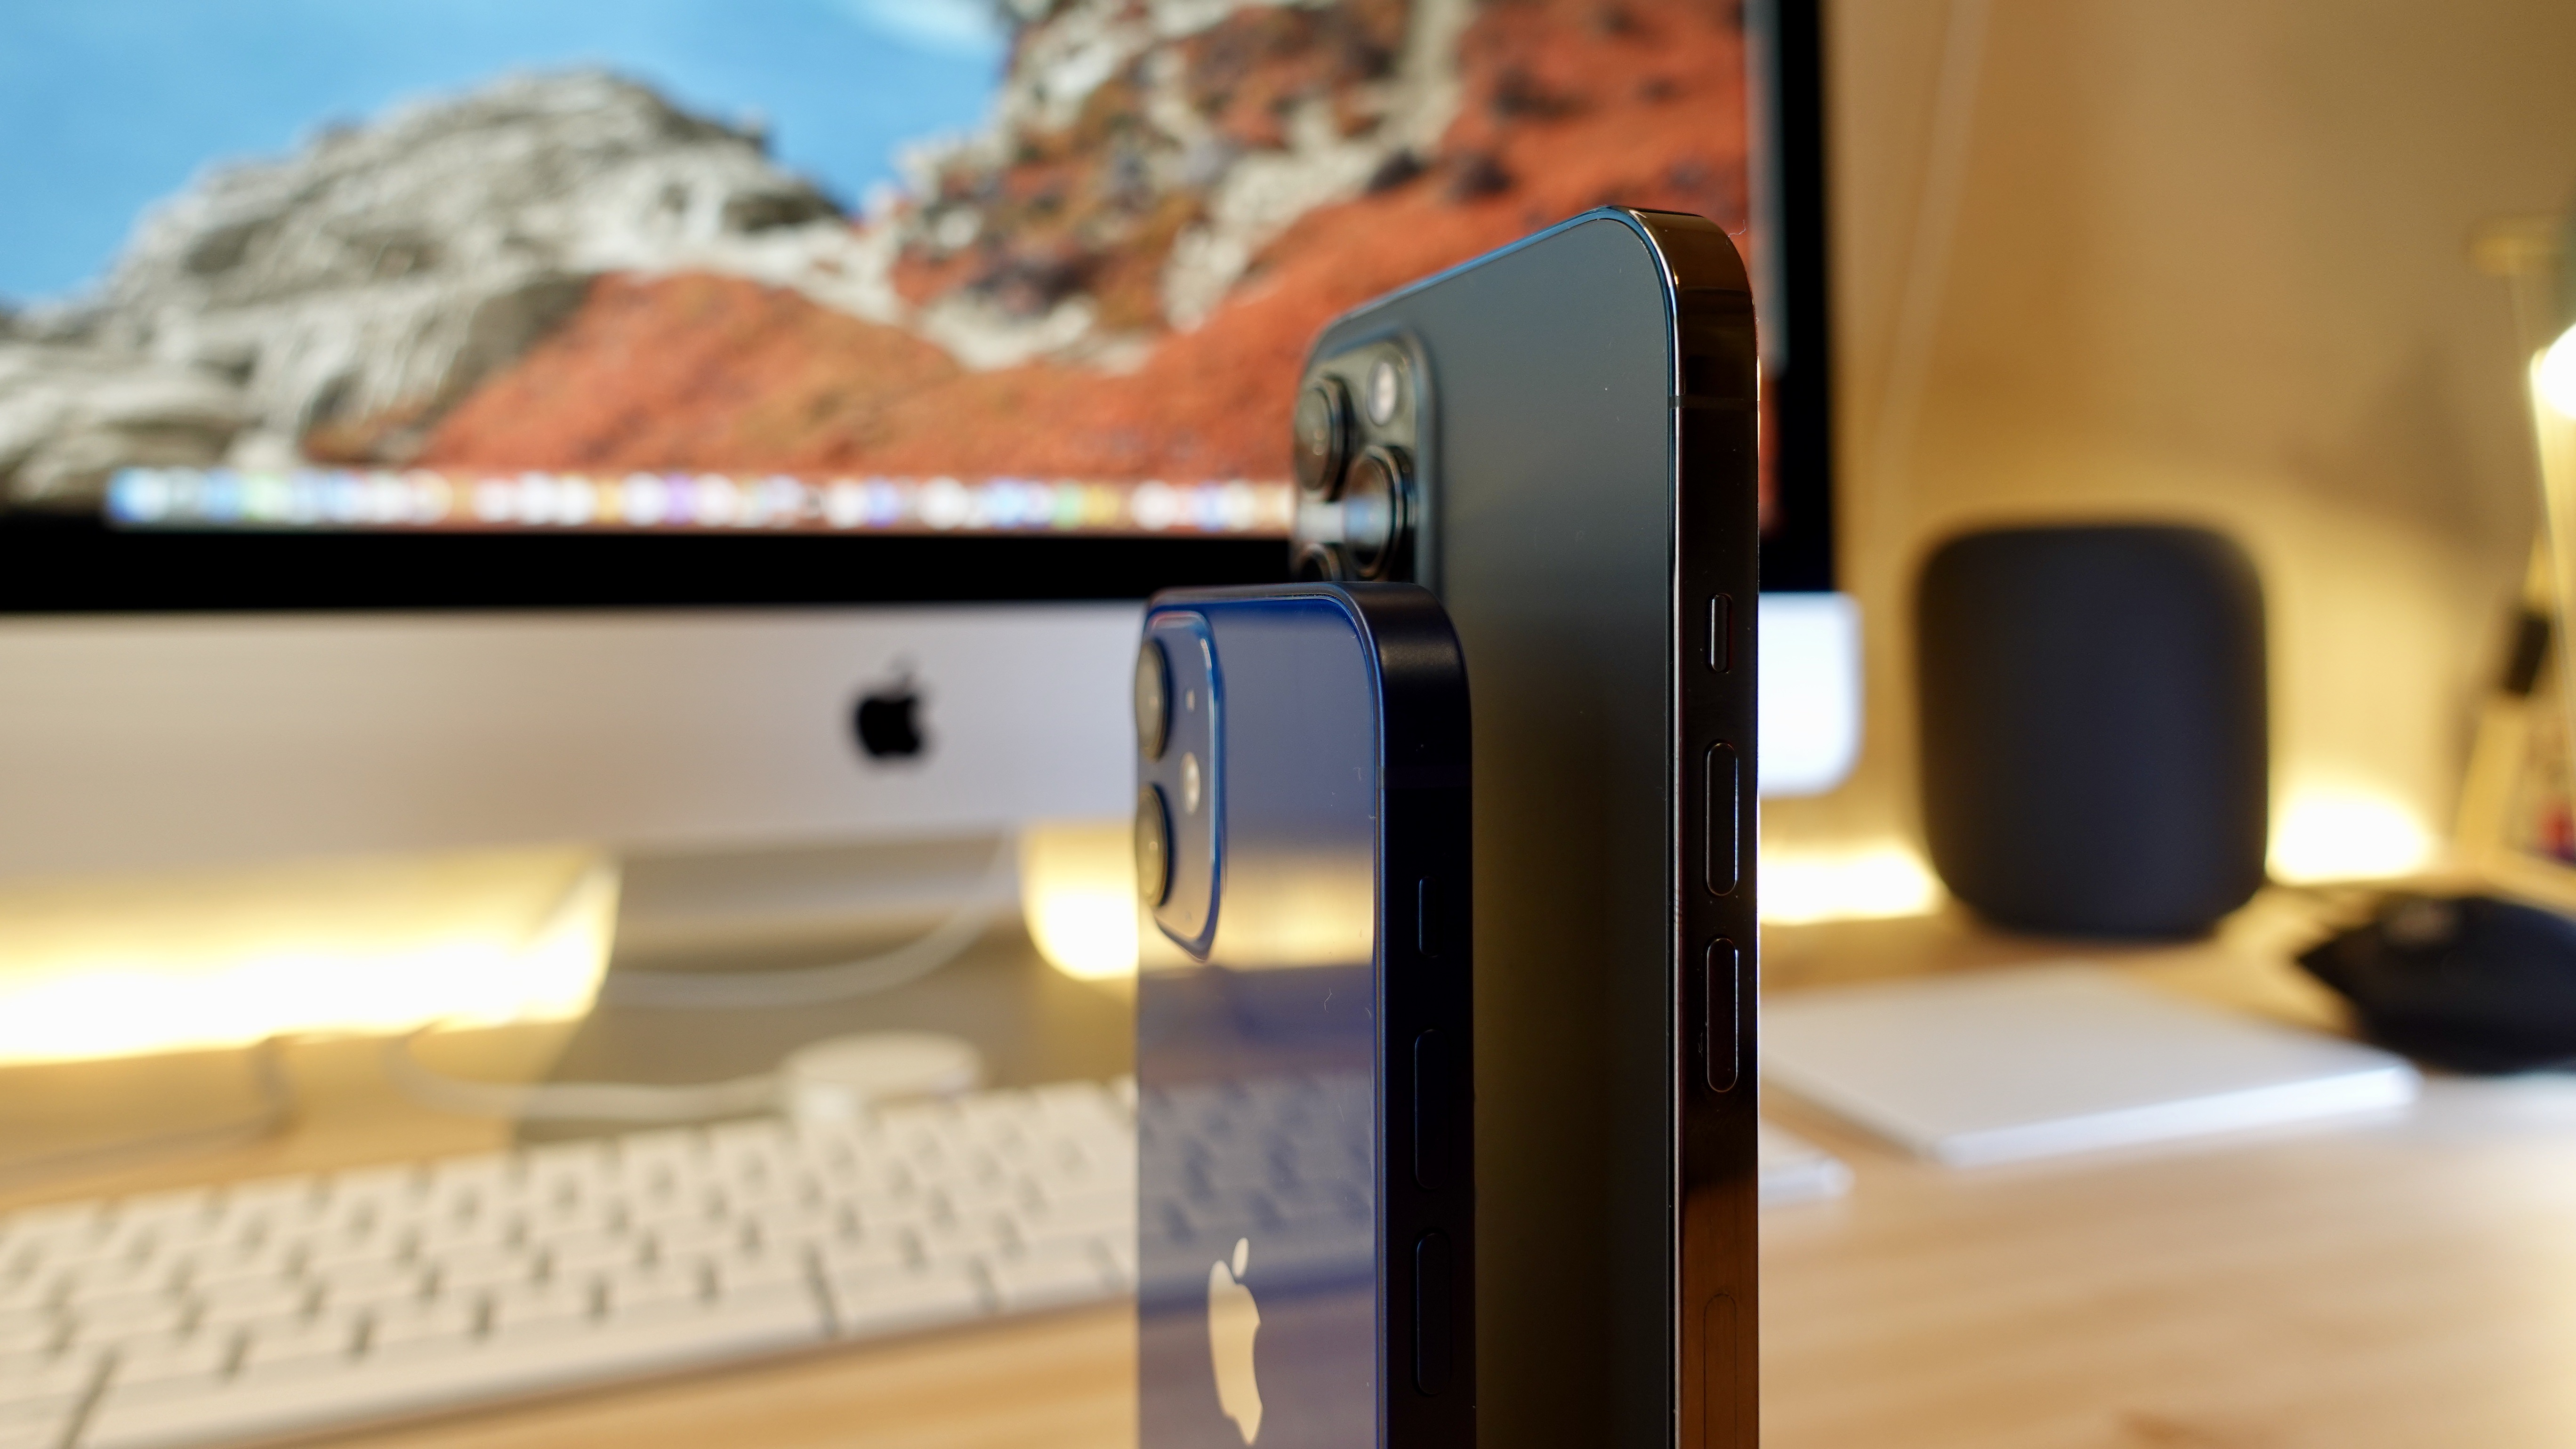 Hands-on: iPhone 12 mini versus iPhone 12 Pro Max design - 9to5Mac